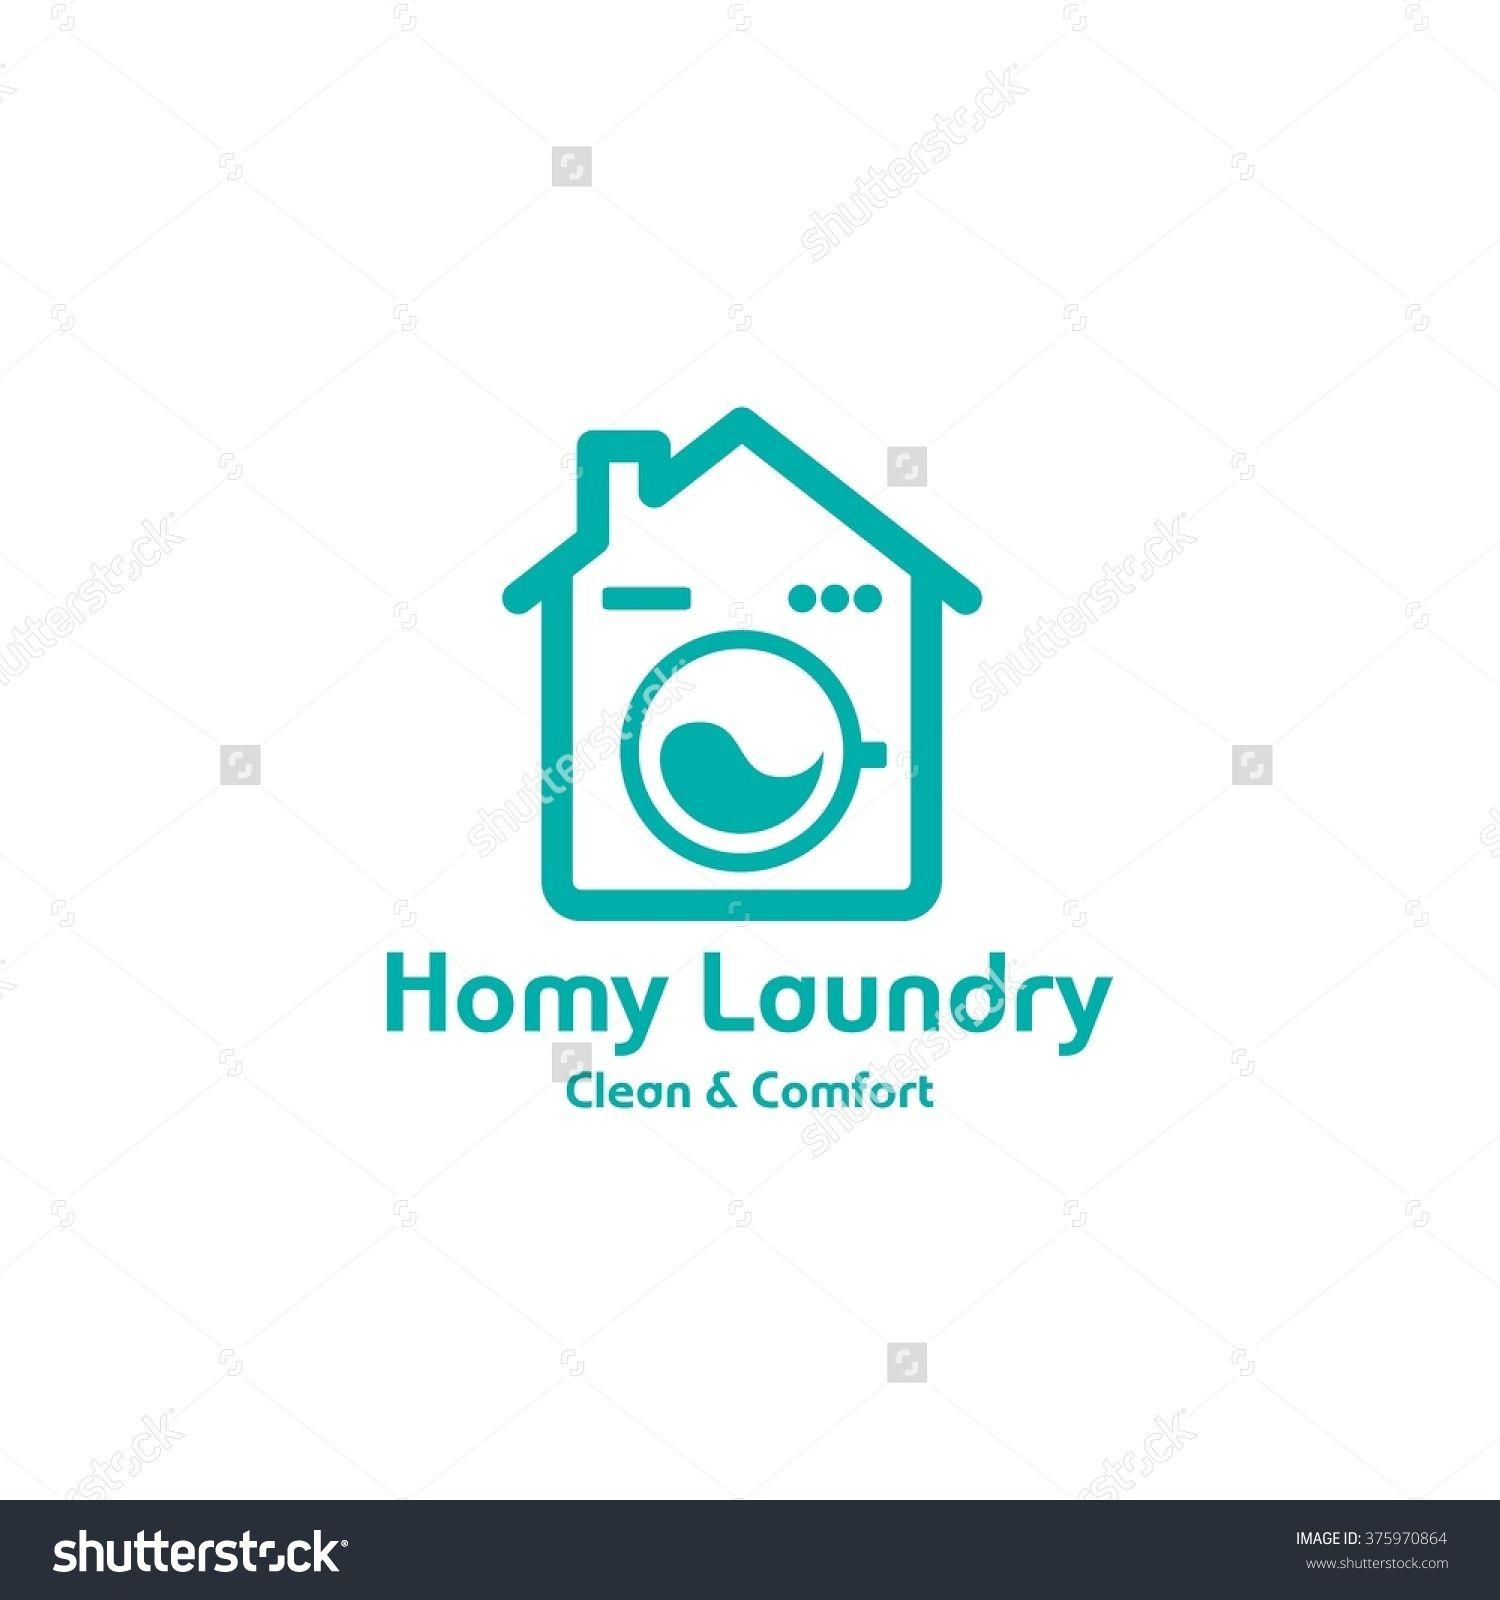 Washing Machine Logo - Laundry Label And Badge,Washing Machine, Laundry Washer, Good For ...